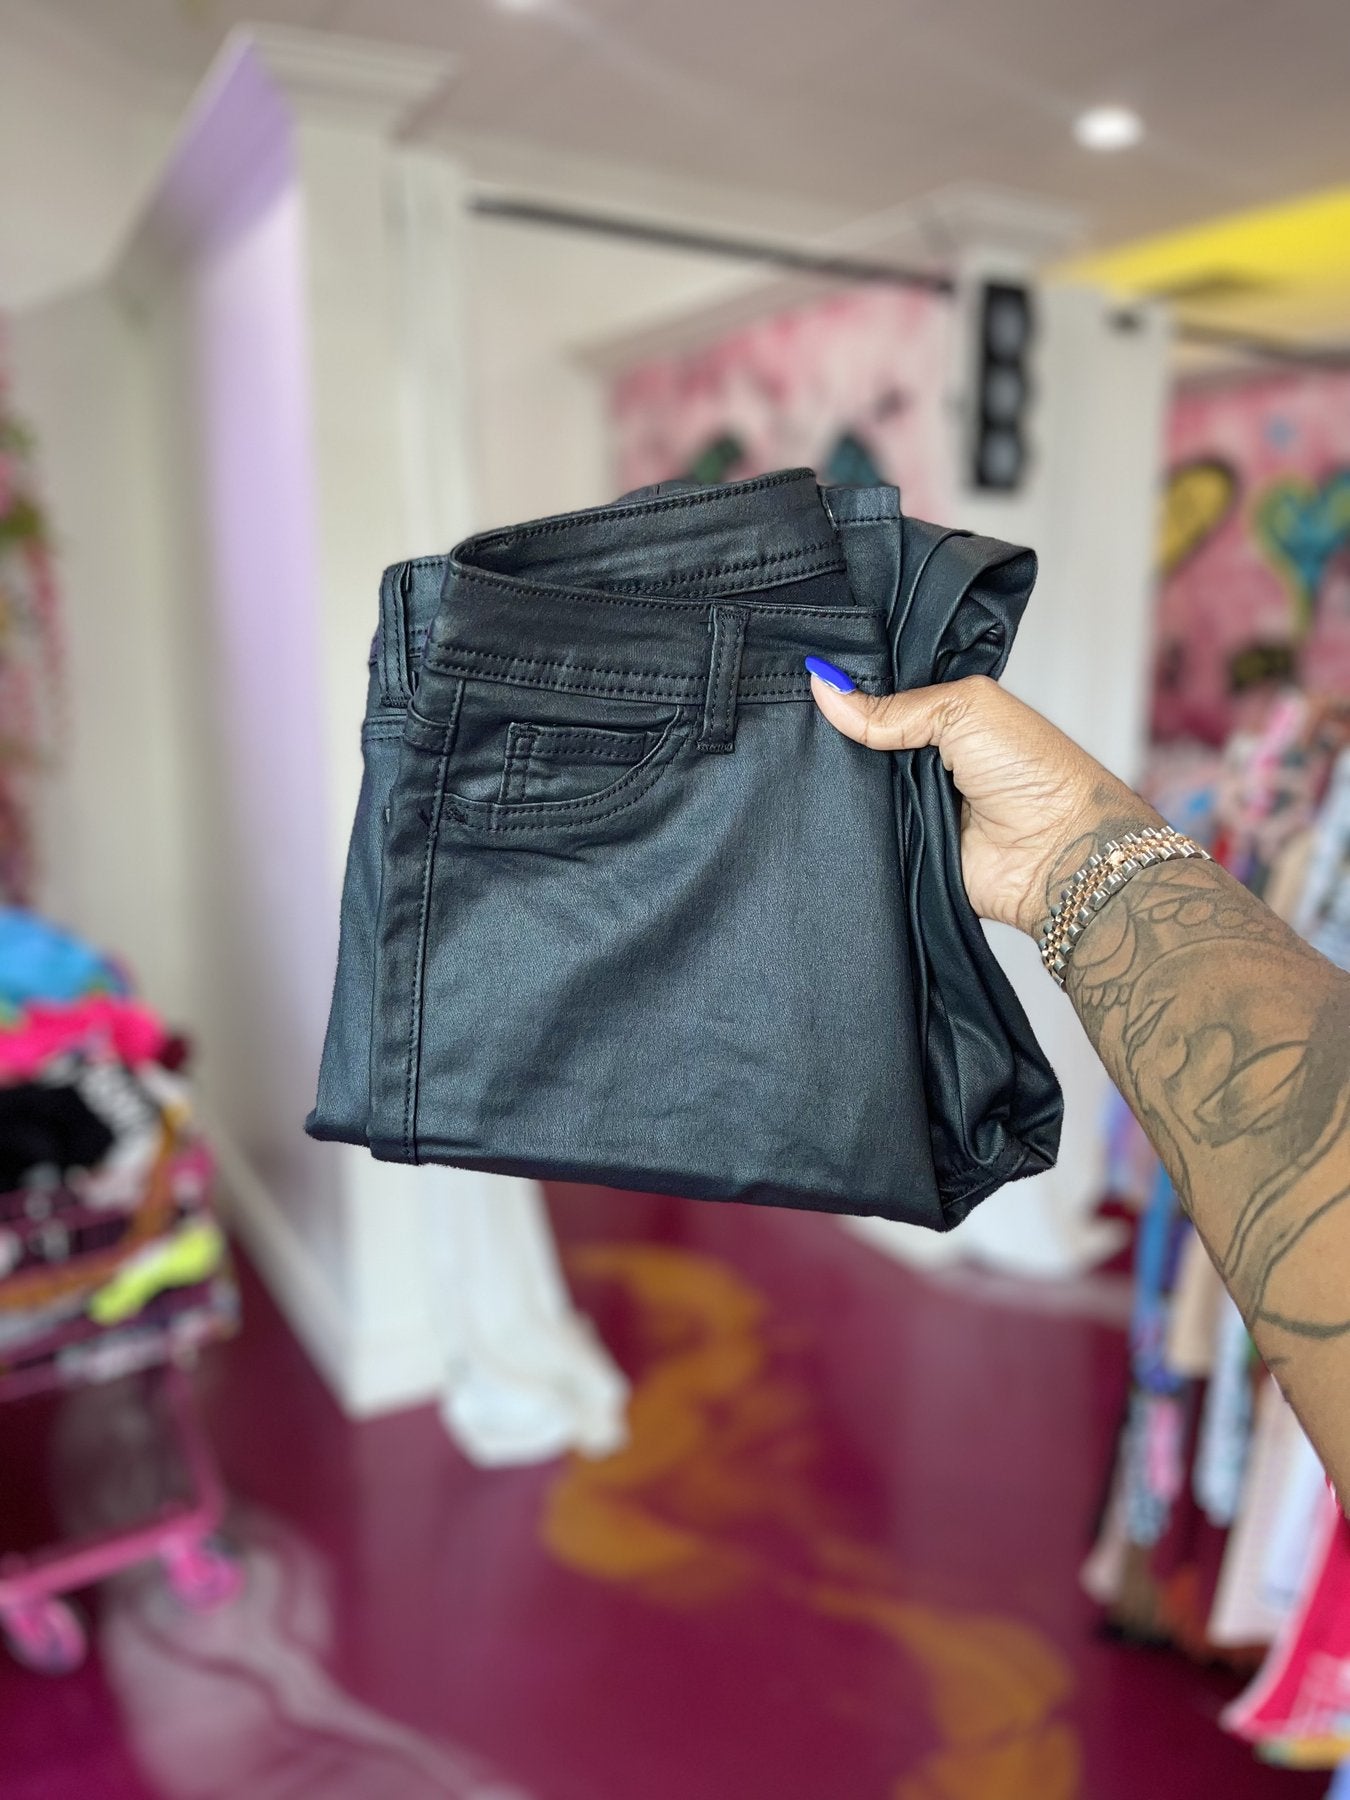 Paint on SnapBack black jeans